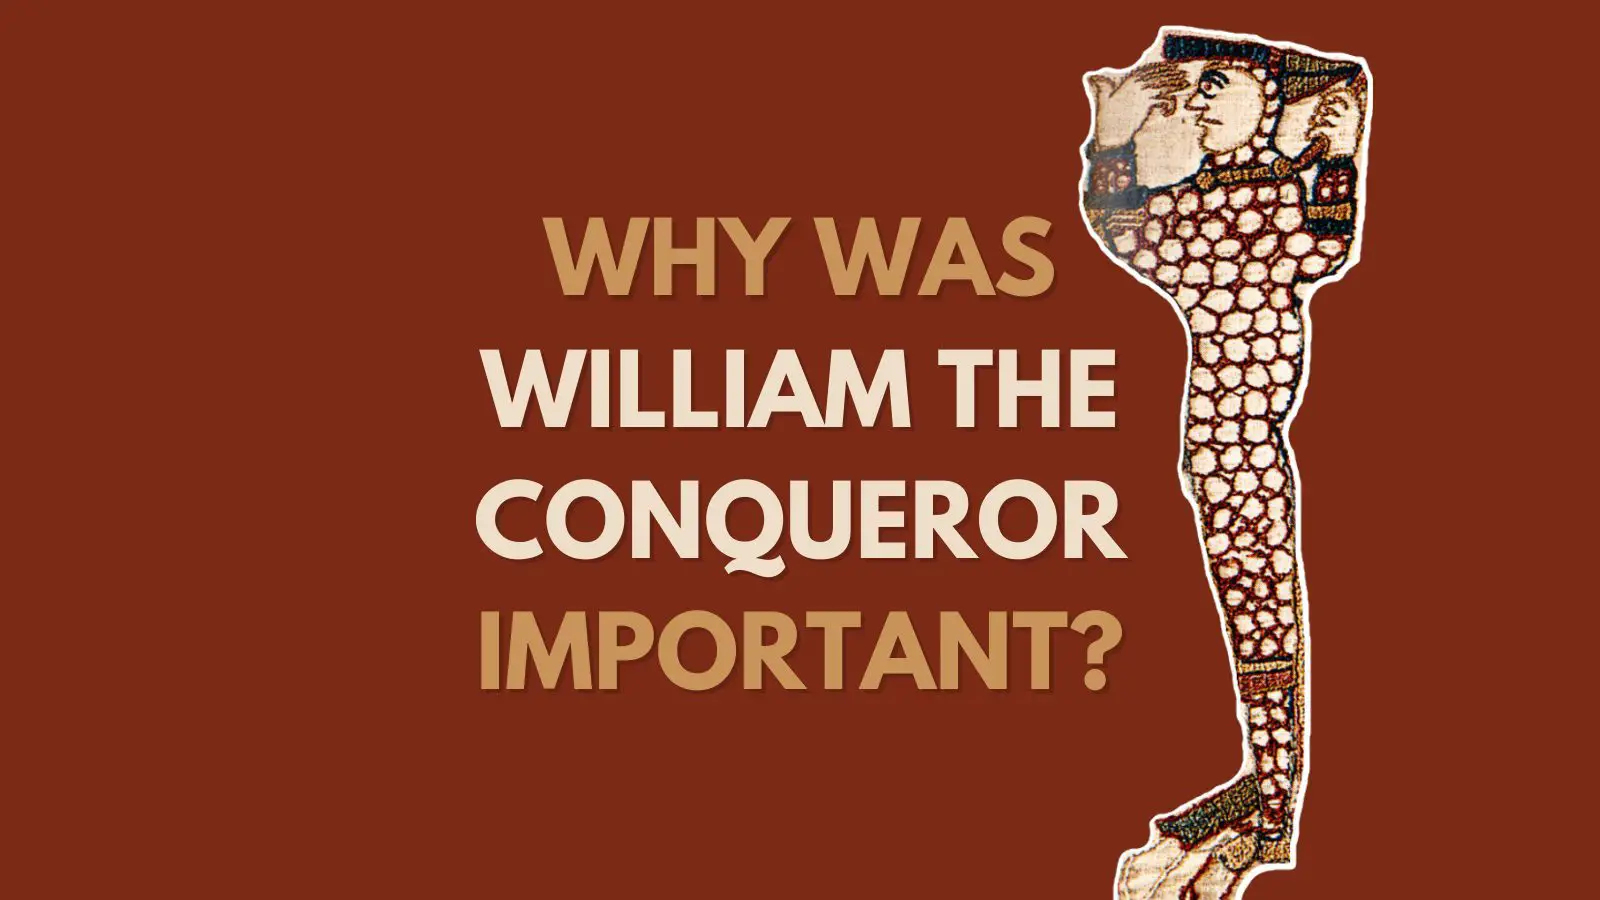 William the conqueror